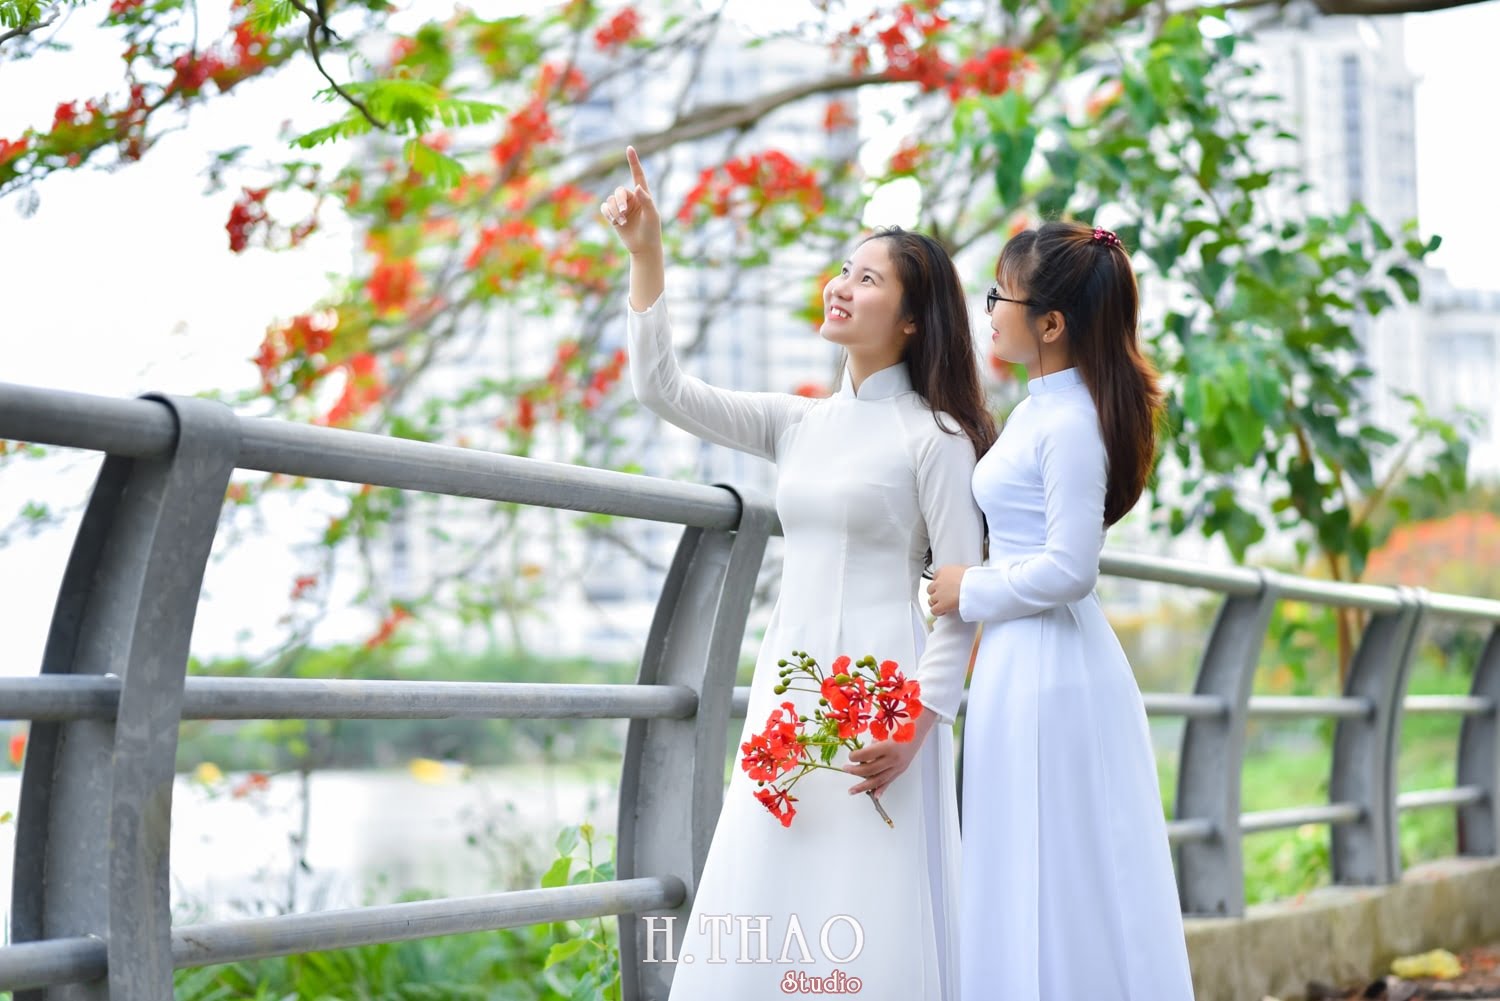 Anh ao dai hoa phuong 14 min - Ảnh chụp ngoại cảnh với hoa phượng cho khách hàng- HThao Studio